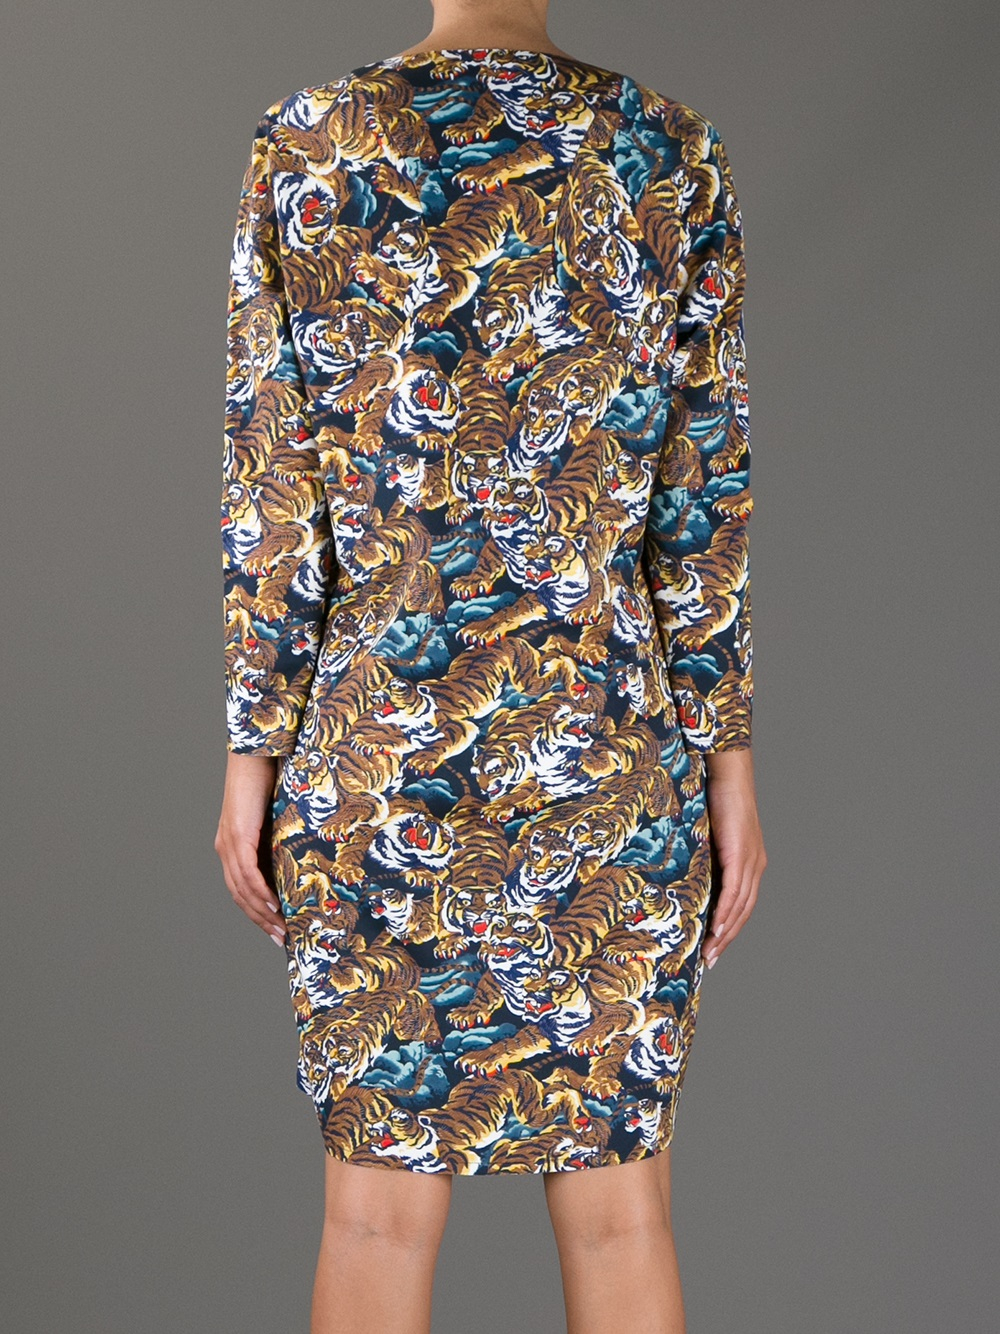 KENZO Tiger Print Dress - Lyst